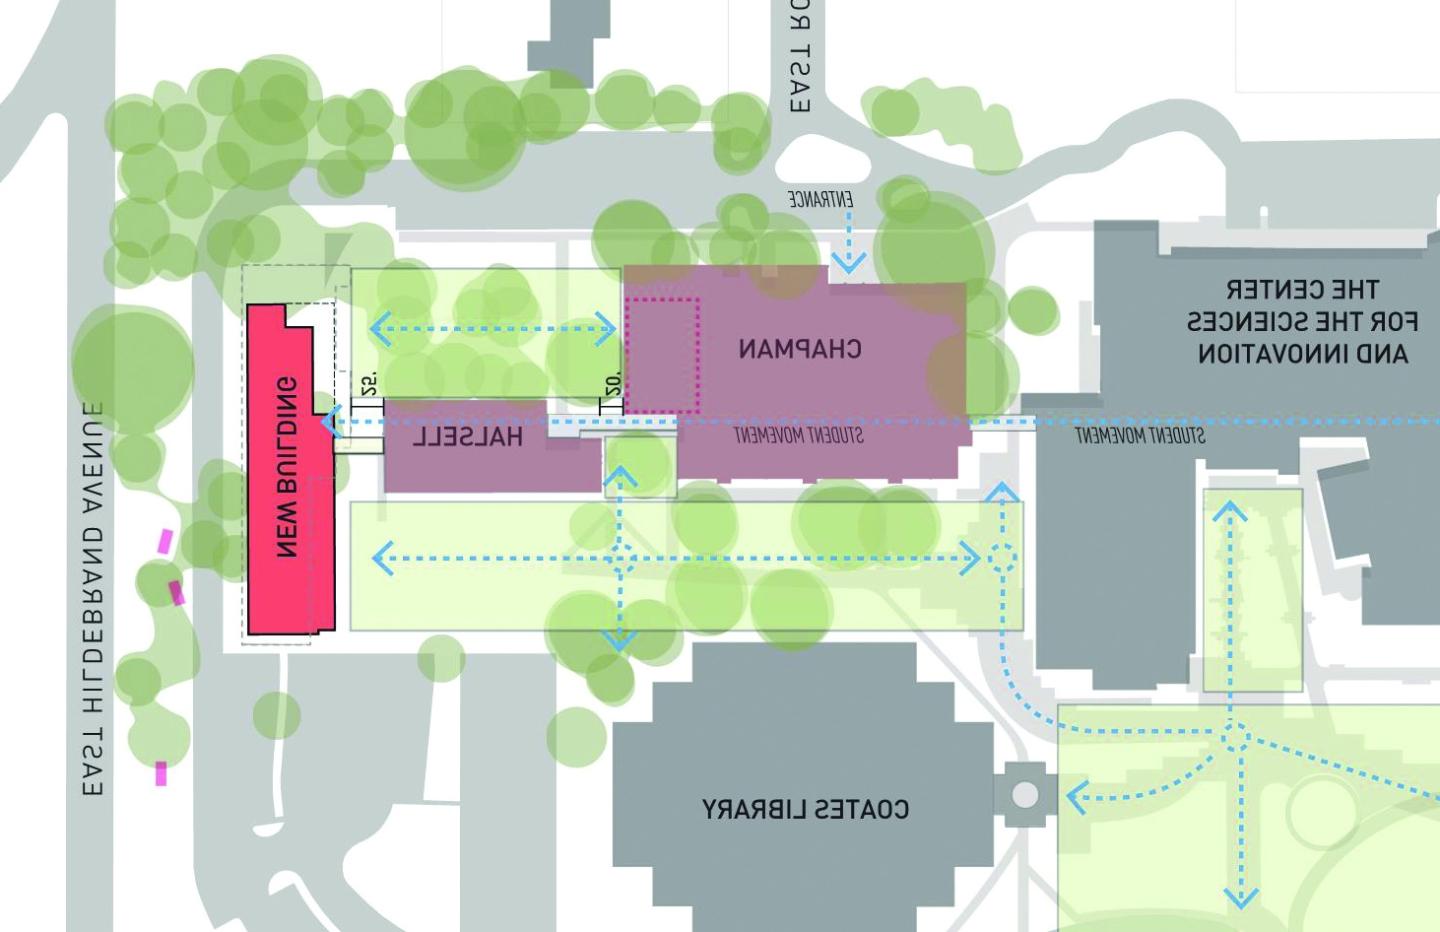 校园地图的一部分显示了新迪克大楼的位置